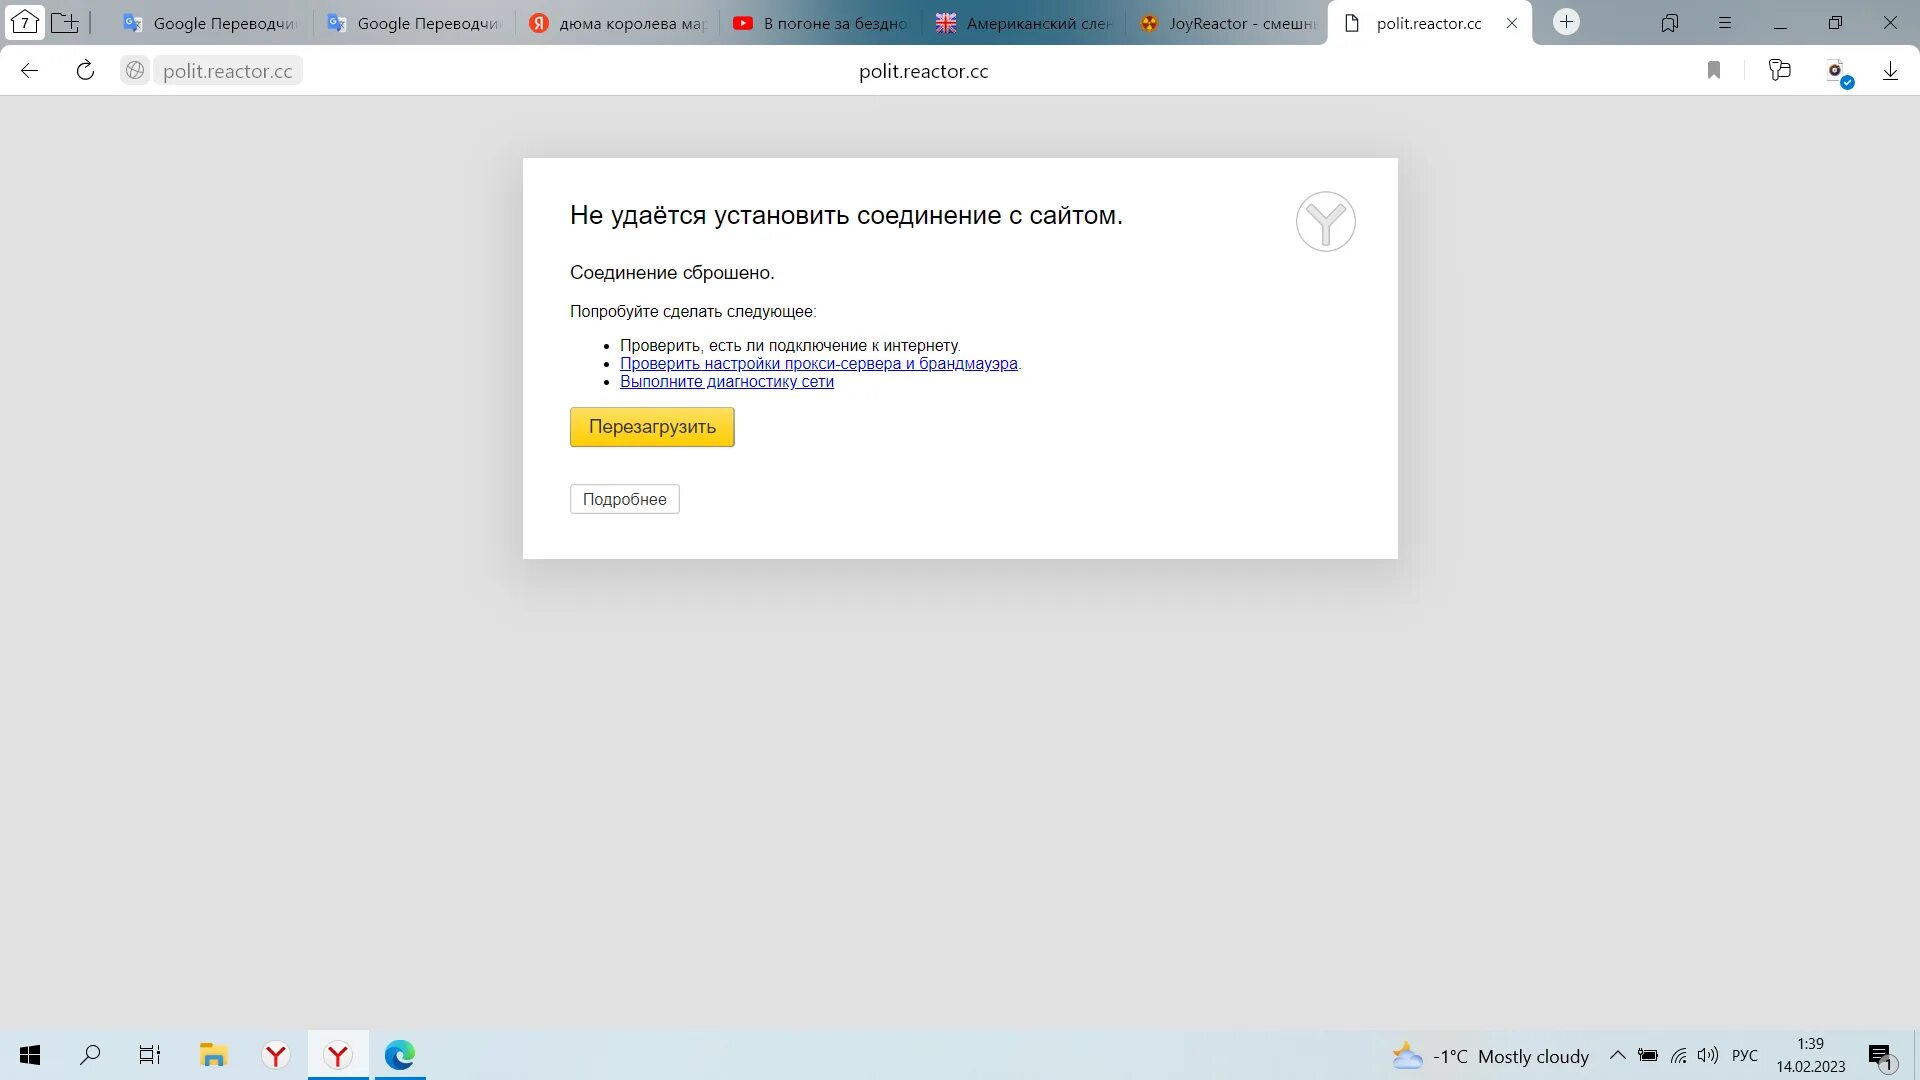 Сайт заблокирован не позволяет установить соединение. Соединение не установлено. Не удаётся установить соединение. Ошибка профиля в Яндексе.